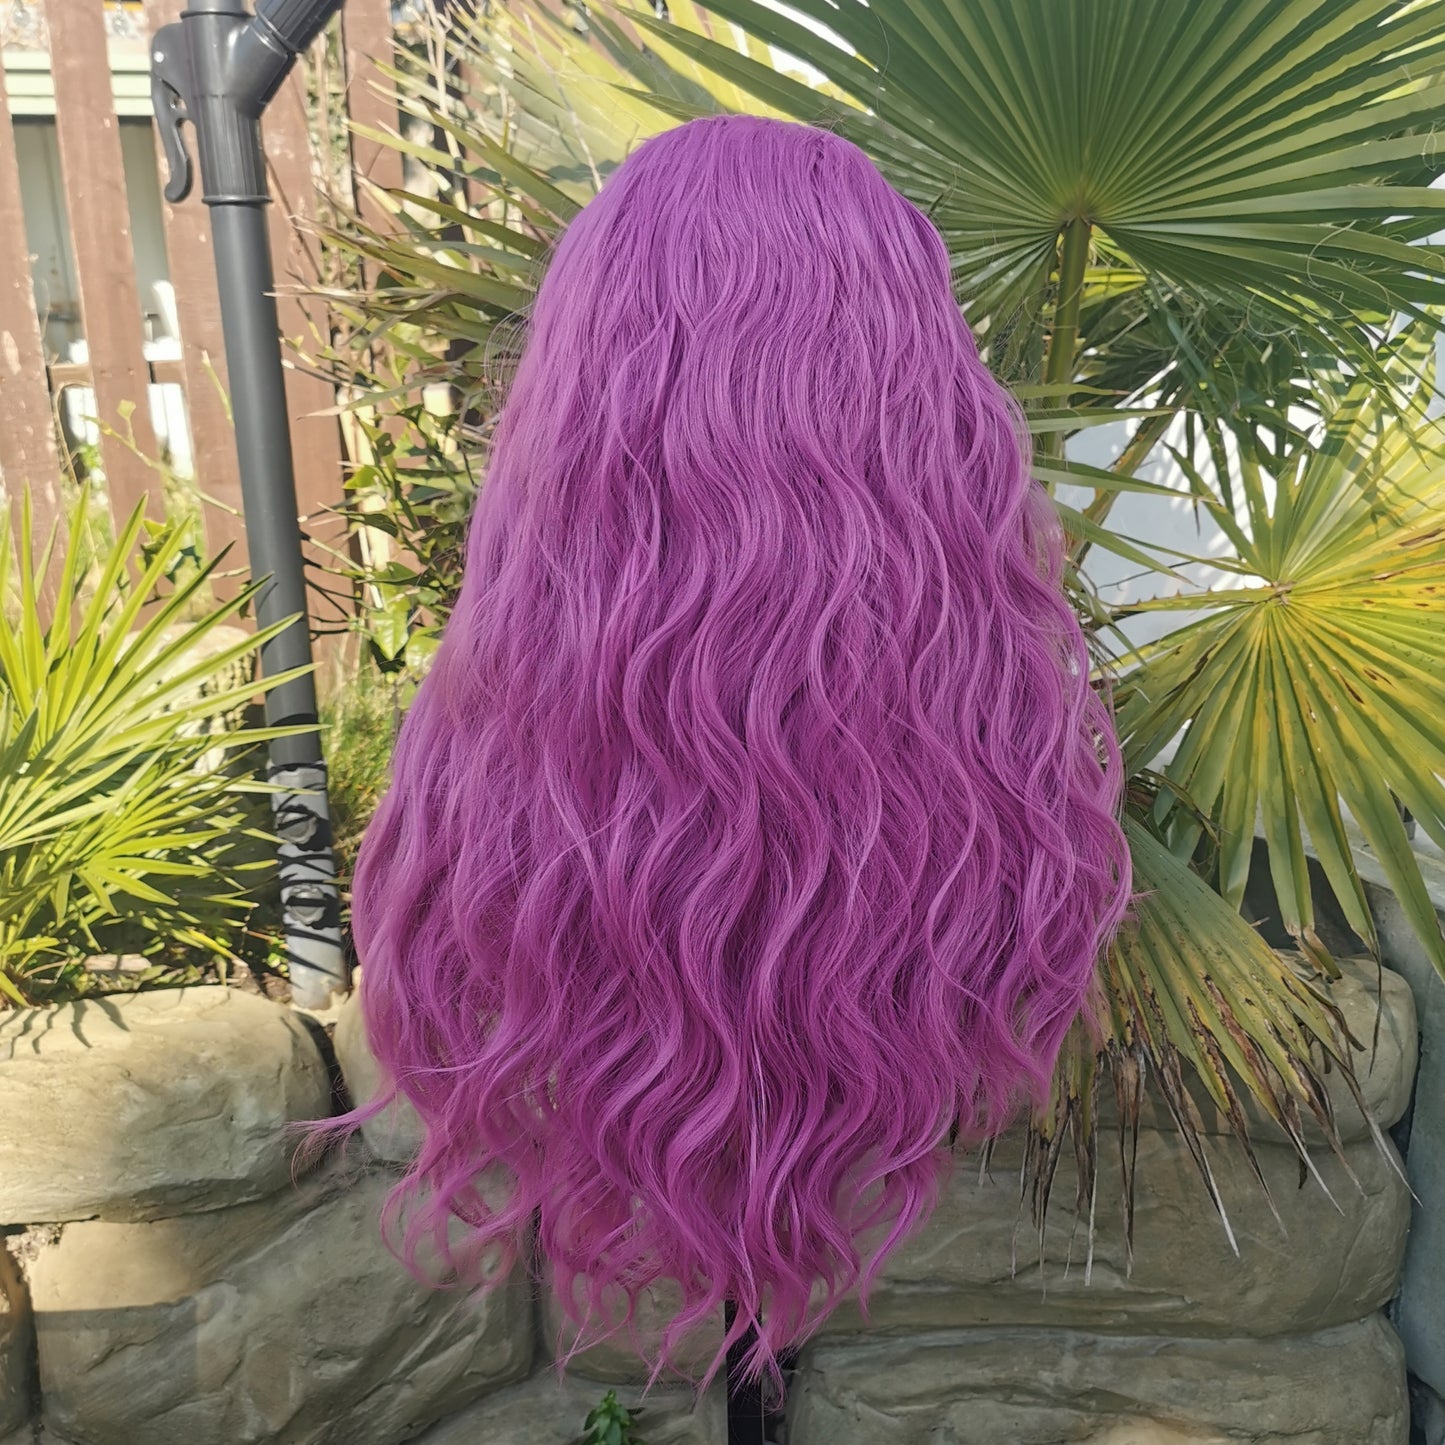 Pink Wavy Headband Wig